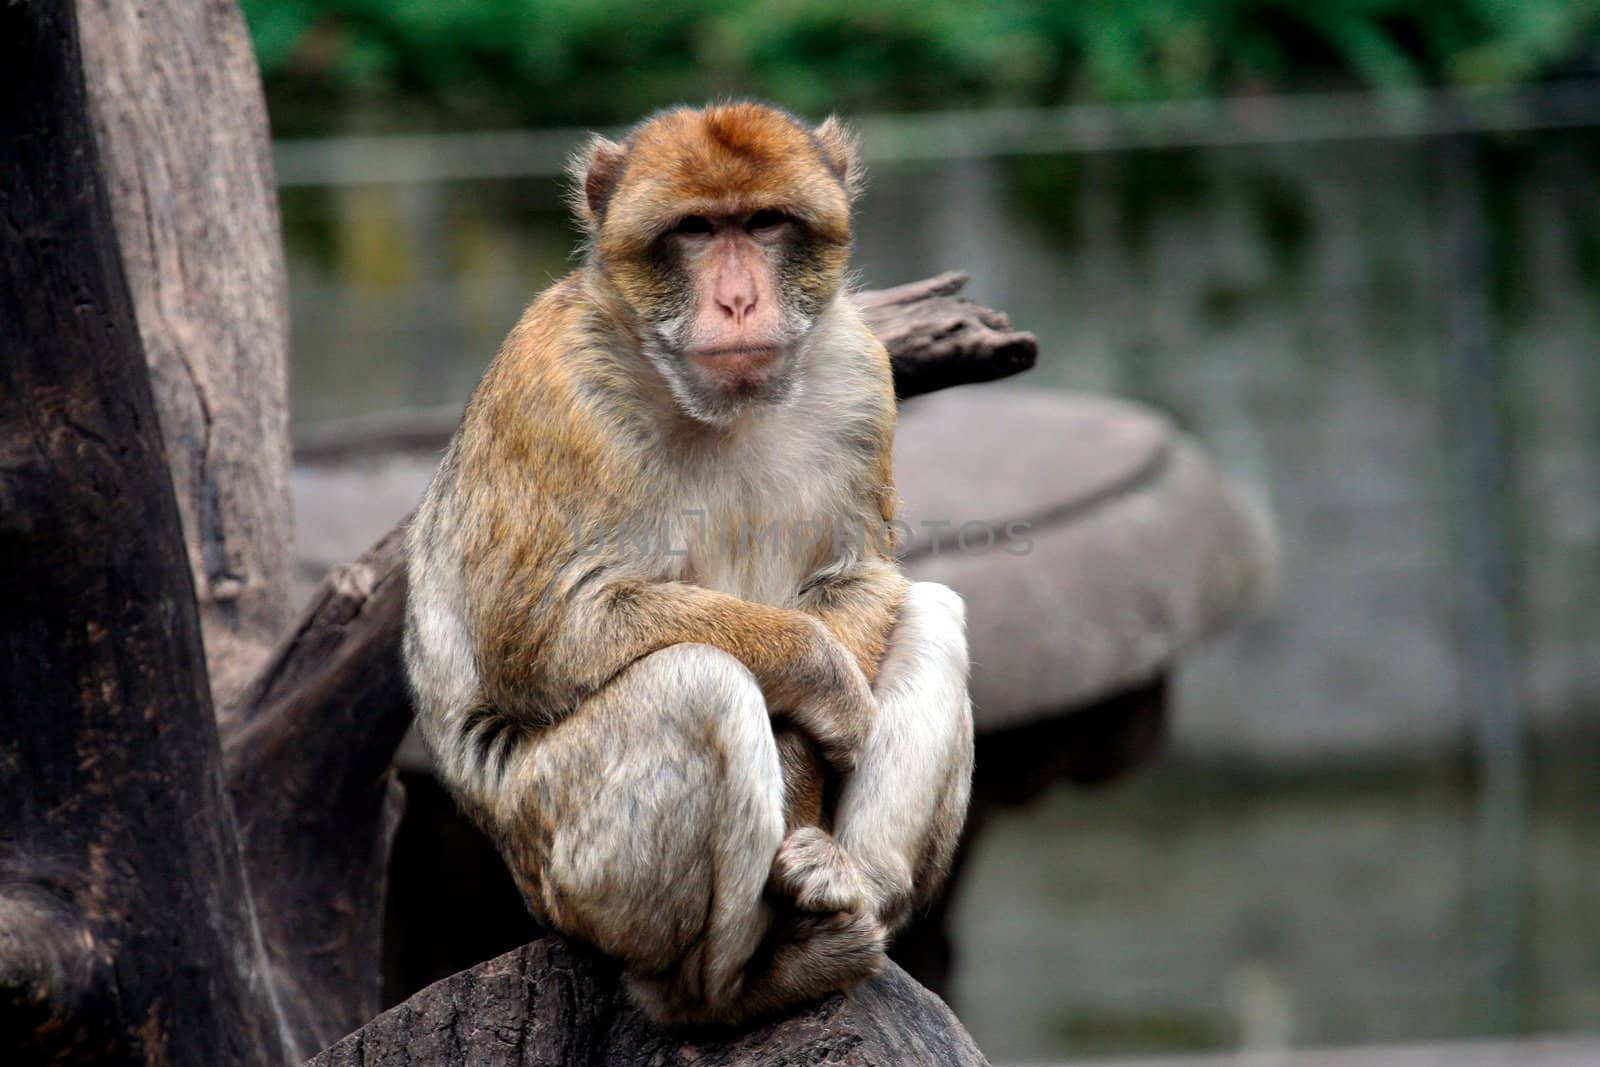 Portrait of a monkey sat in a tree.